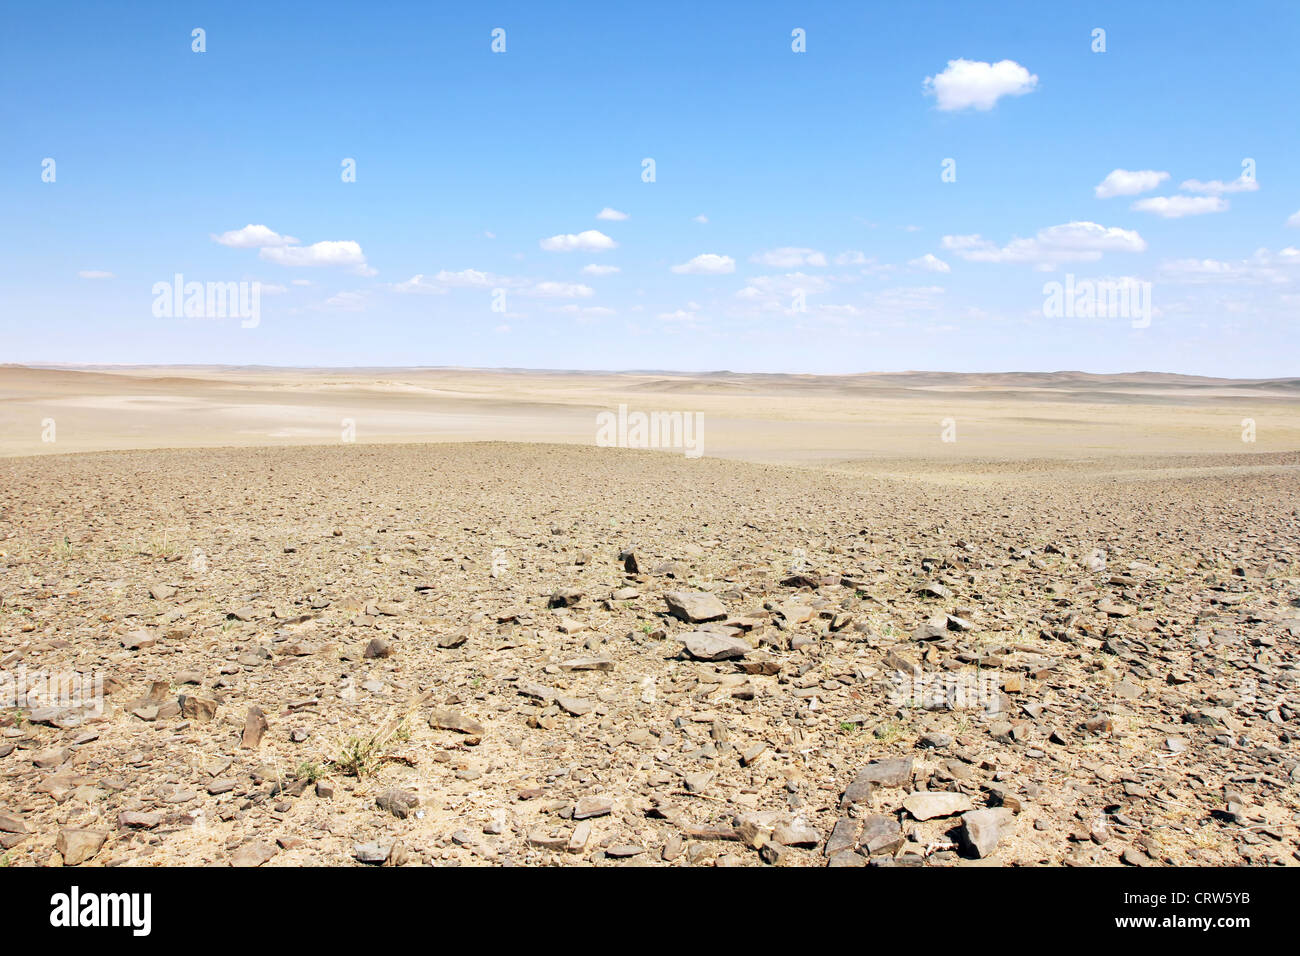 Gobi desert Stock Photo